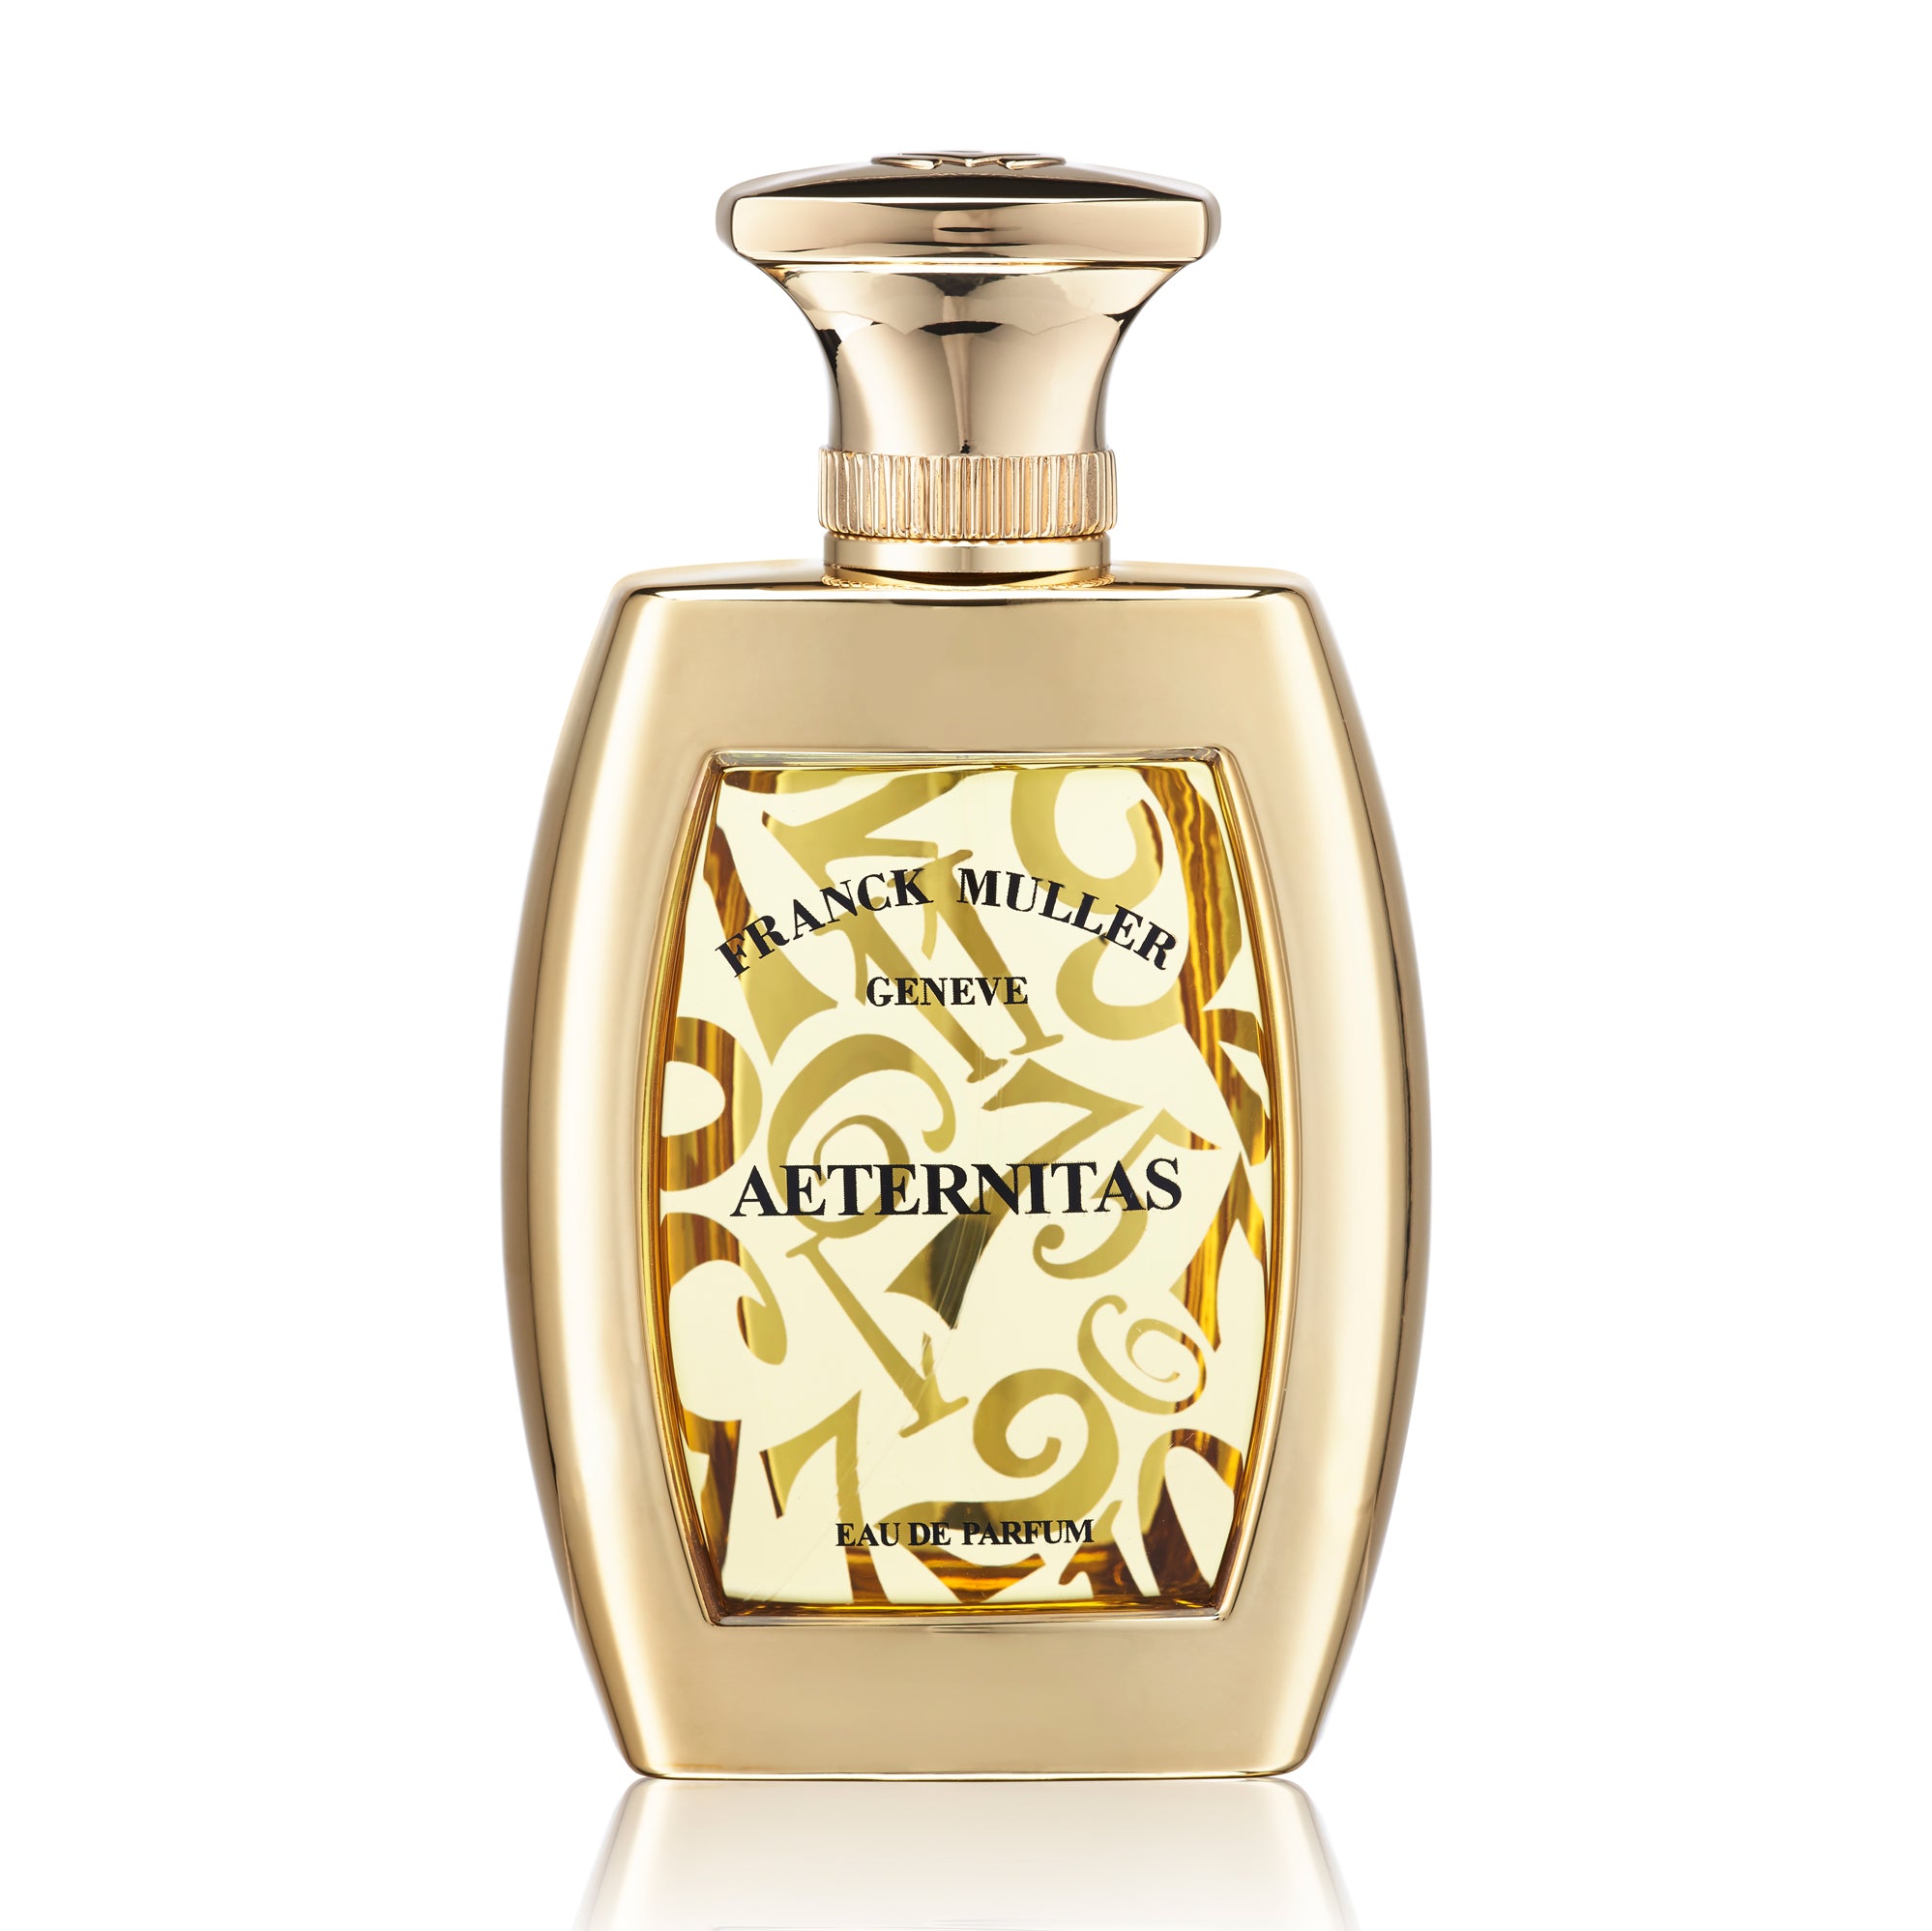 Aeternitas Eau de Parfum 75ml Bottle by Franck Muller